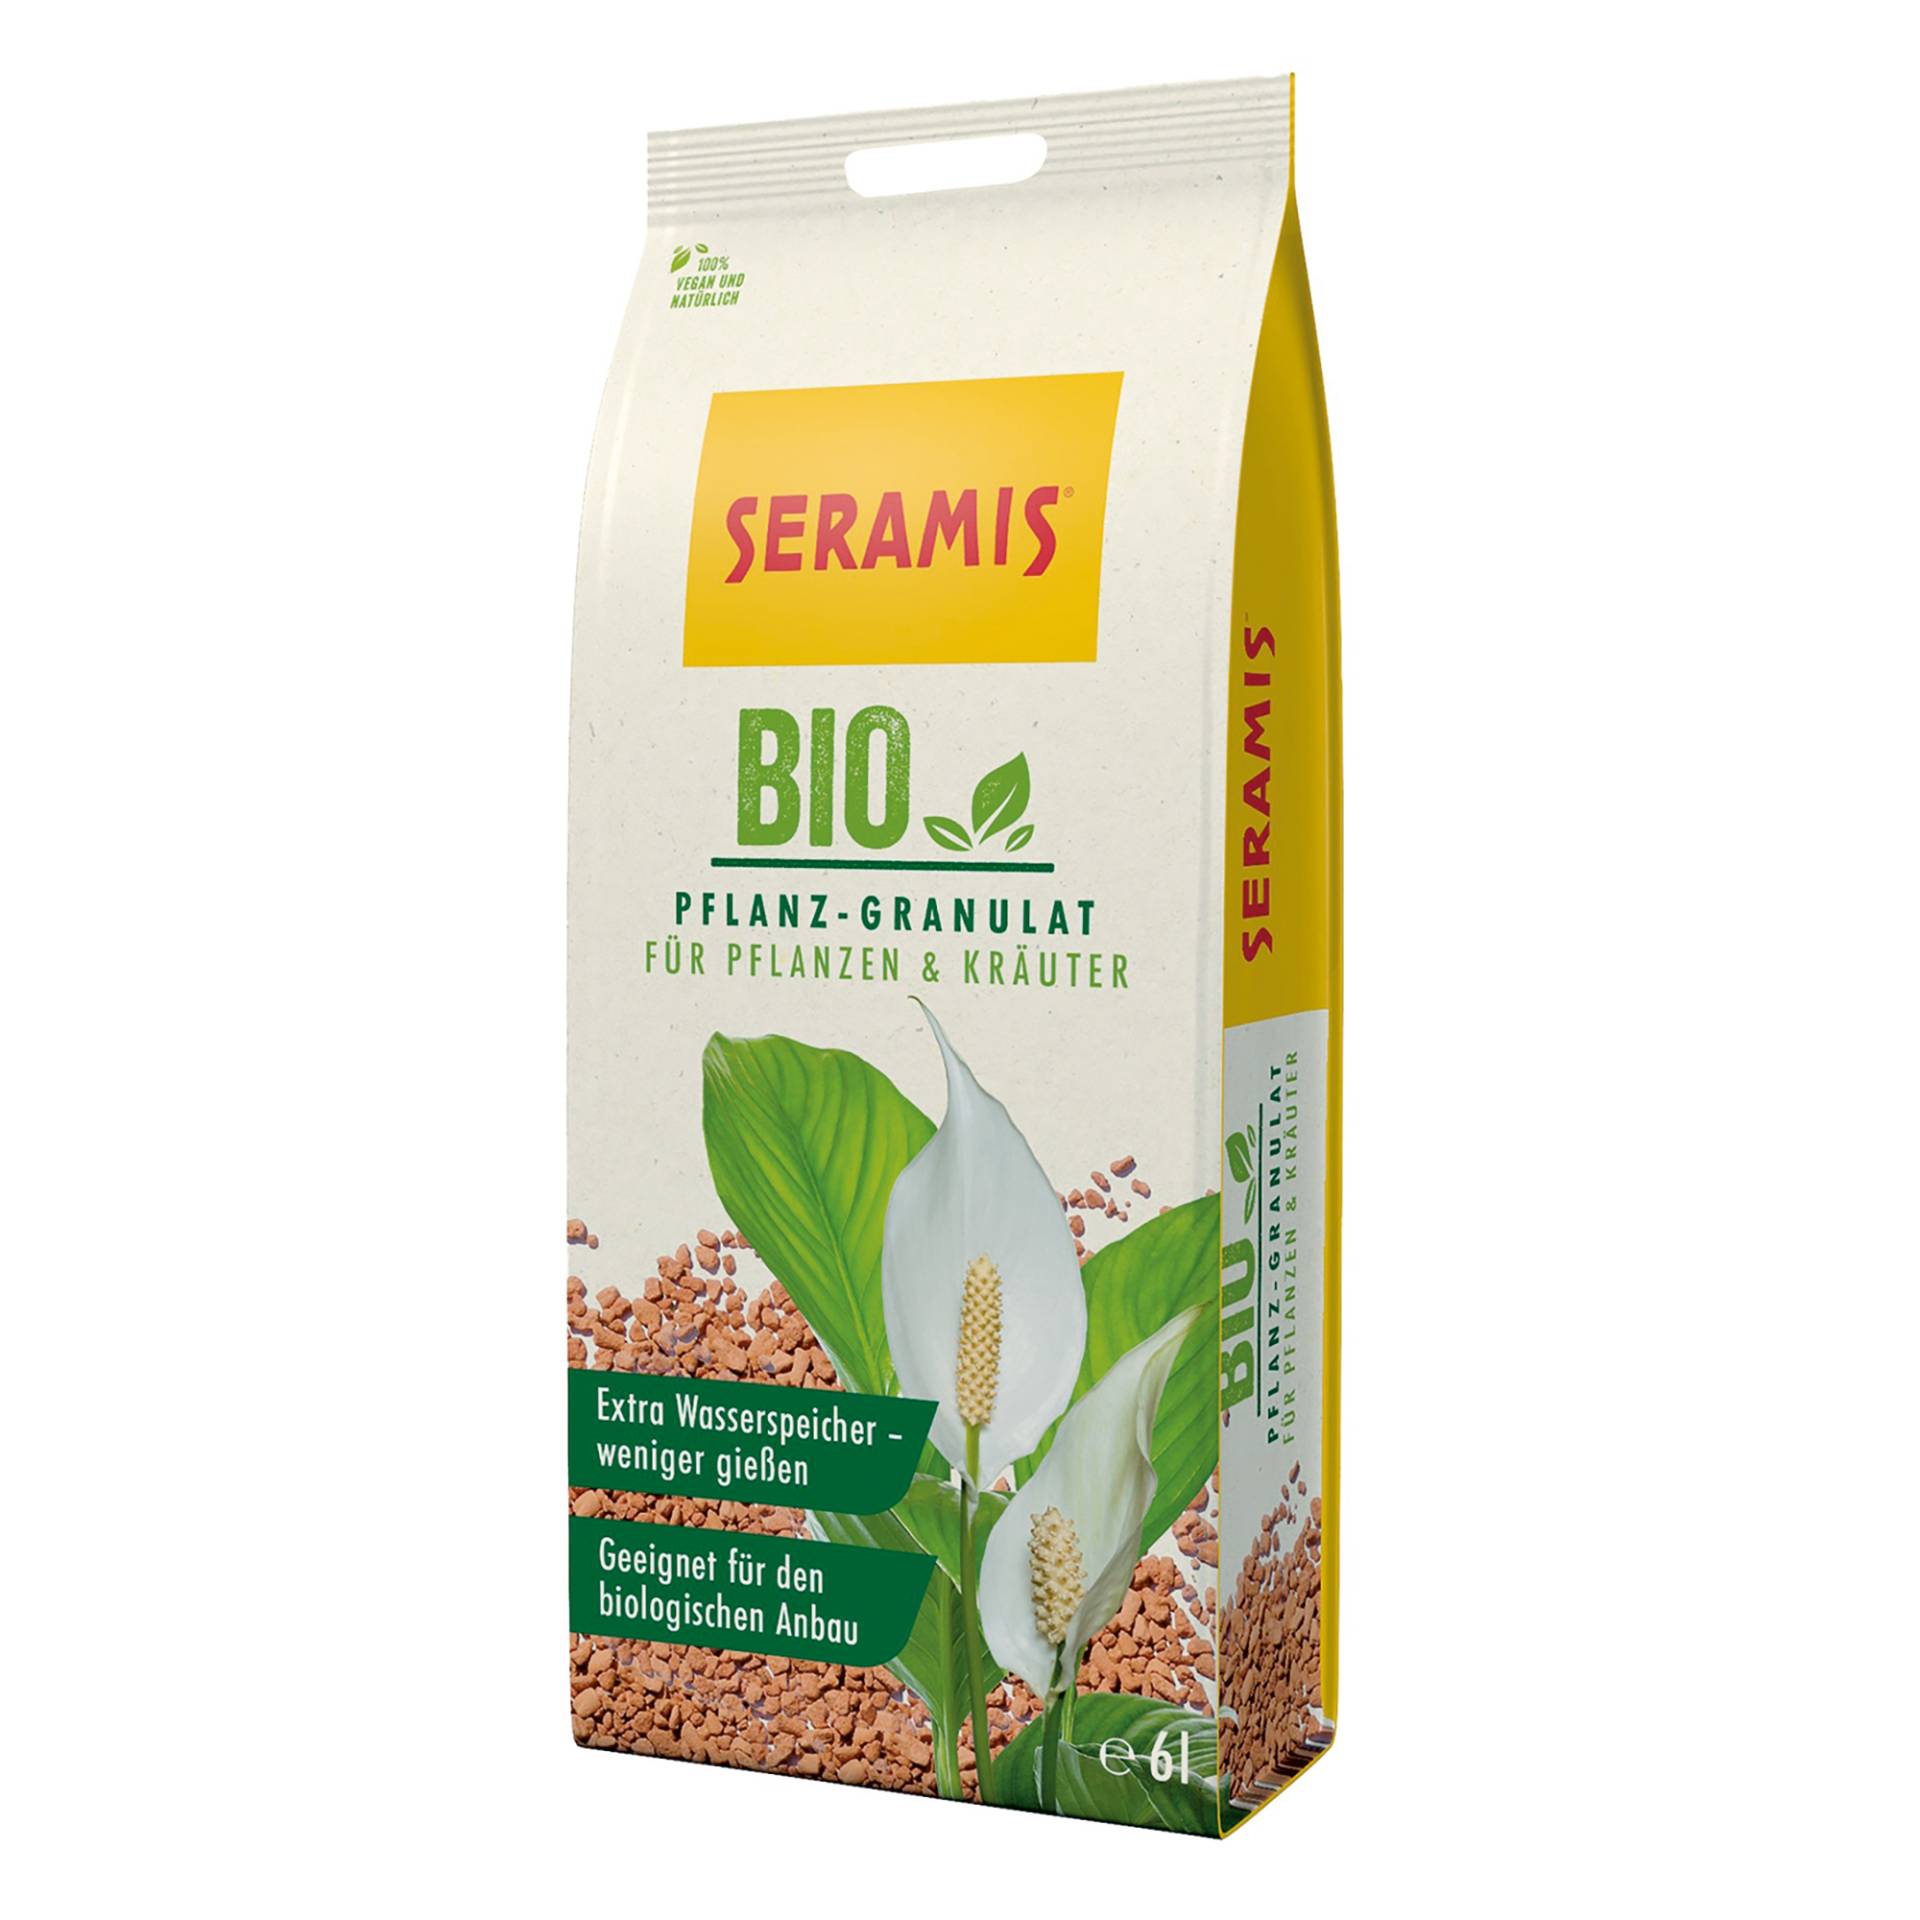 Seramis Bio-Pflanz-Granulat für Pflanzen und Kräuter 2,5 l von Seramis